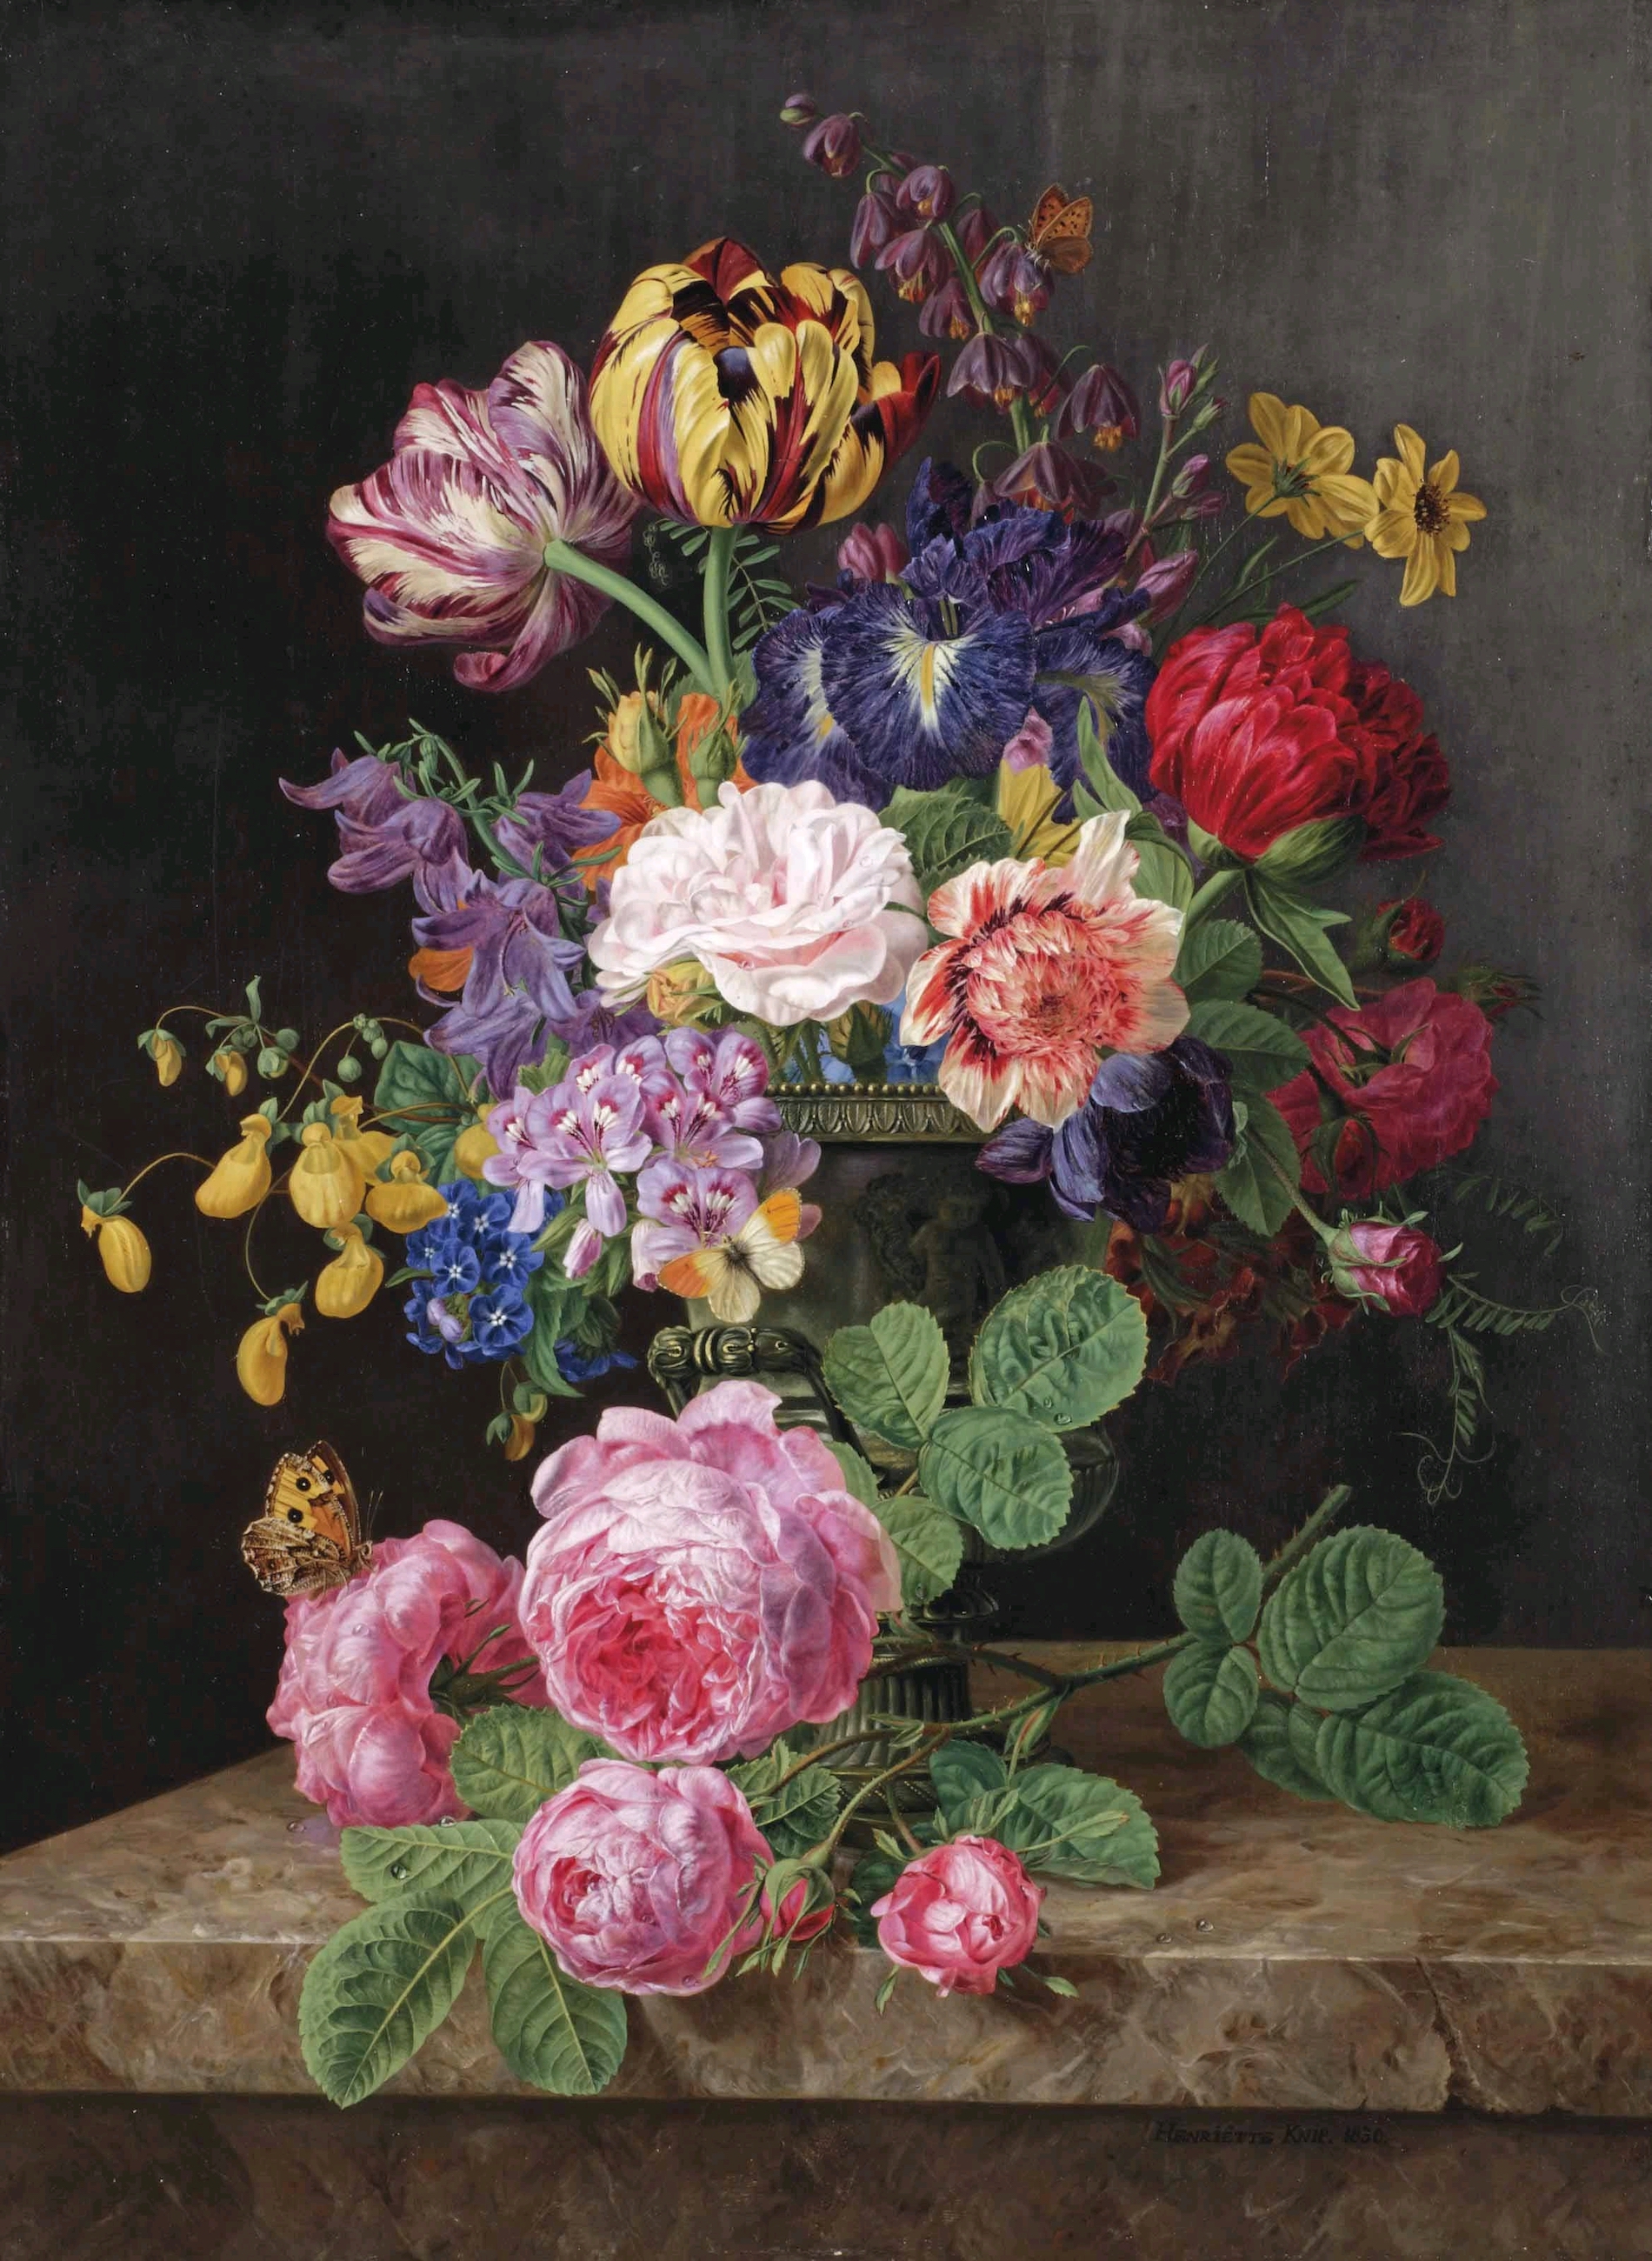 Kwiaty w wazonie by Henriëtte Geertruida Knip - 1830 - 57 x 42 cm 